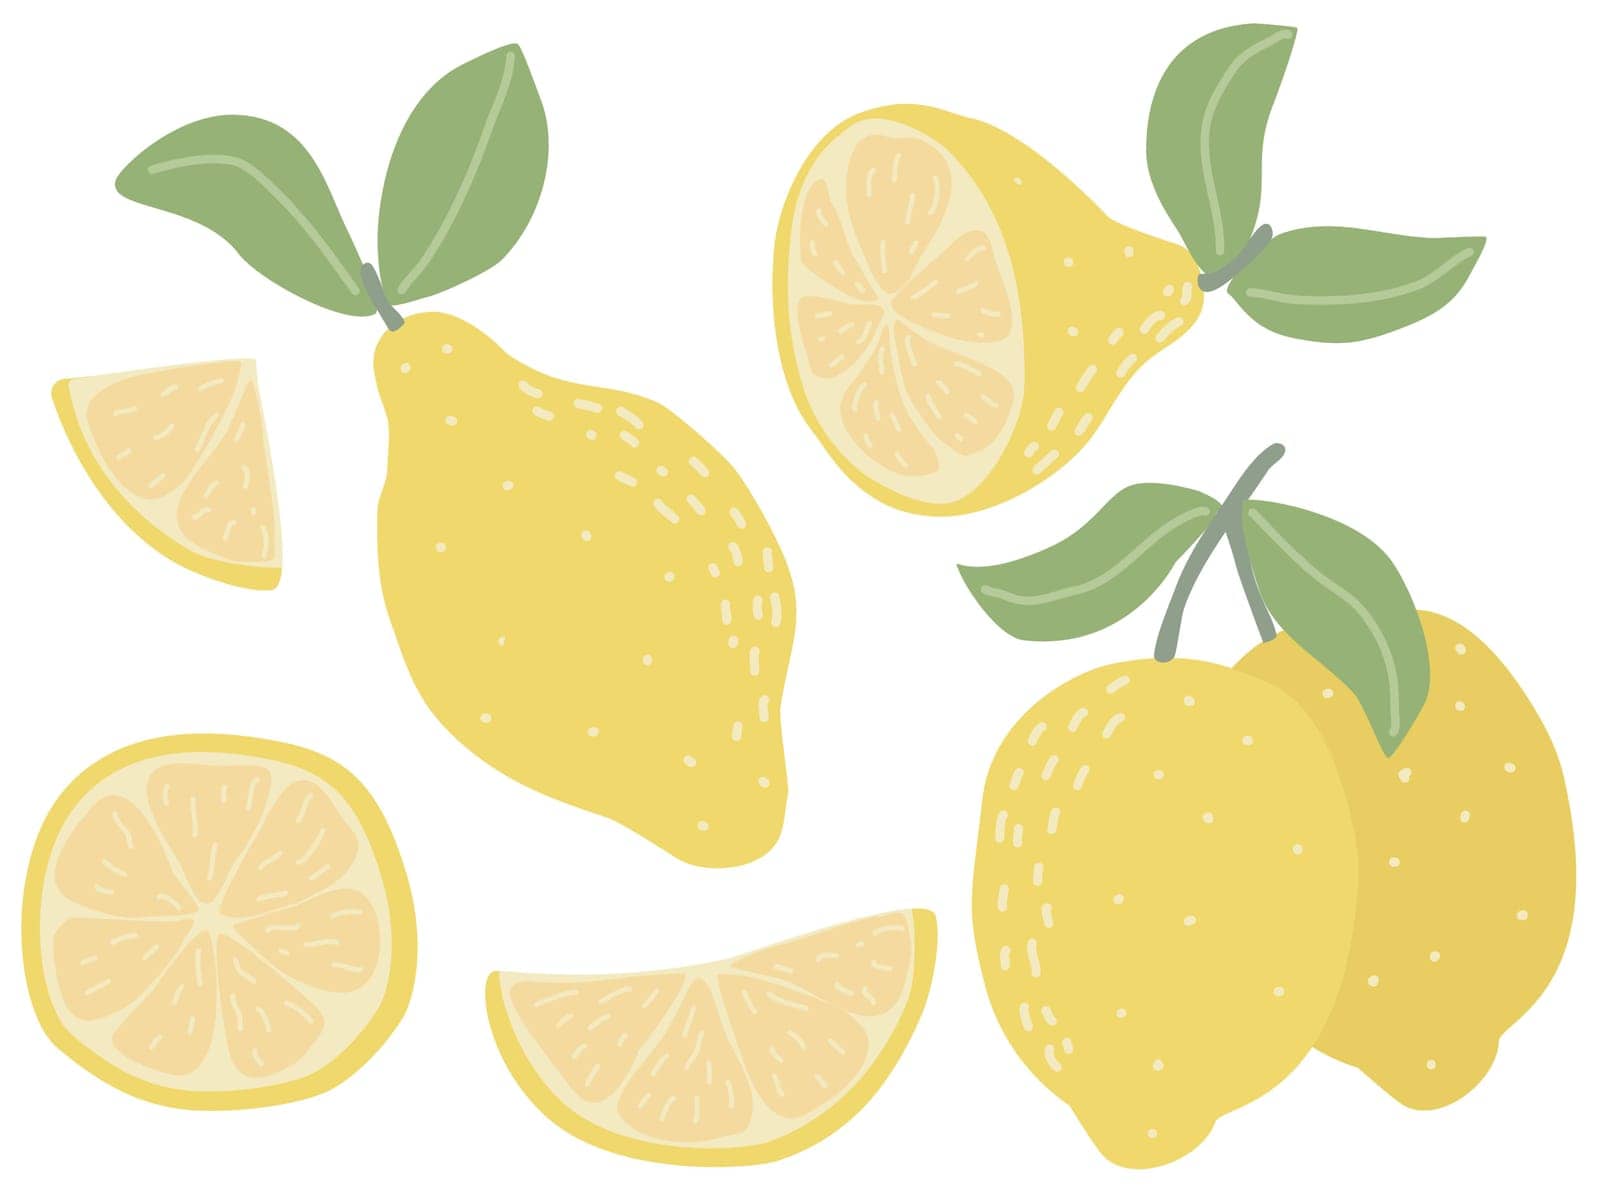 Modern set of lemons isolated on white background by TassiaK